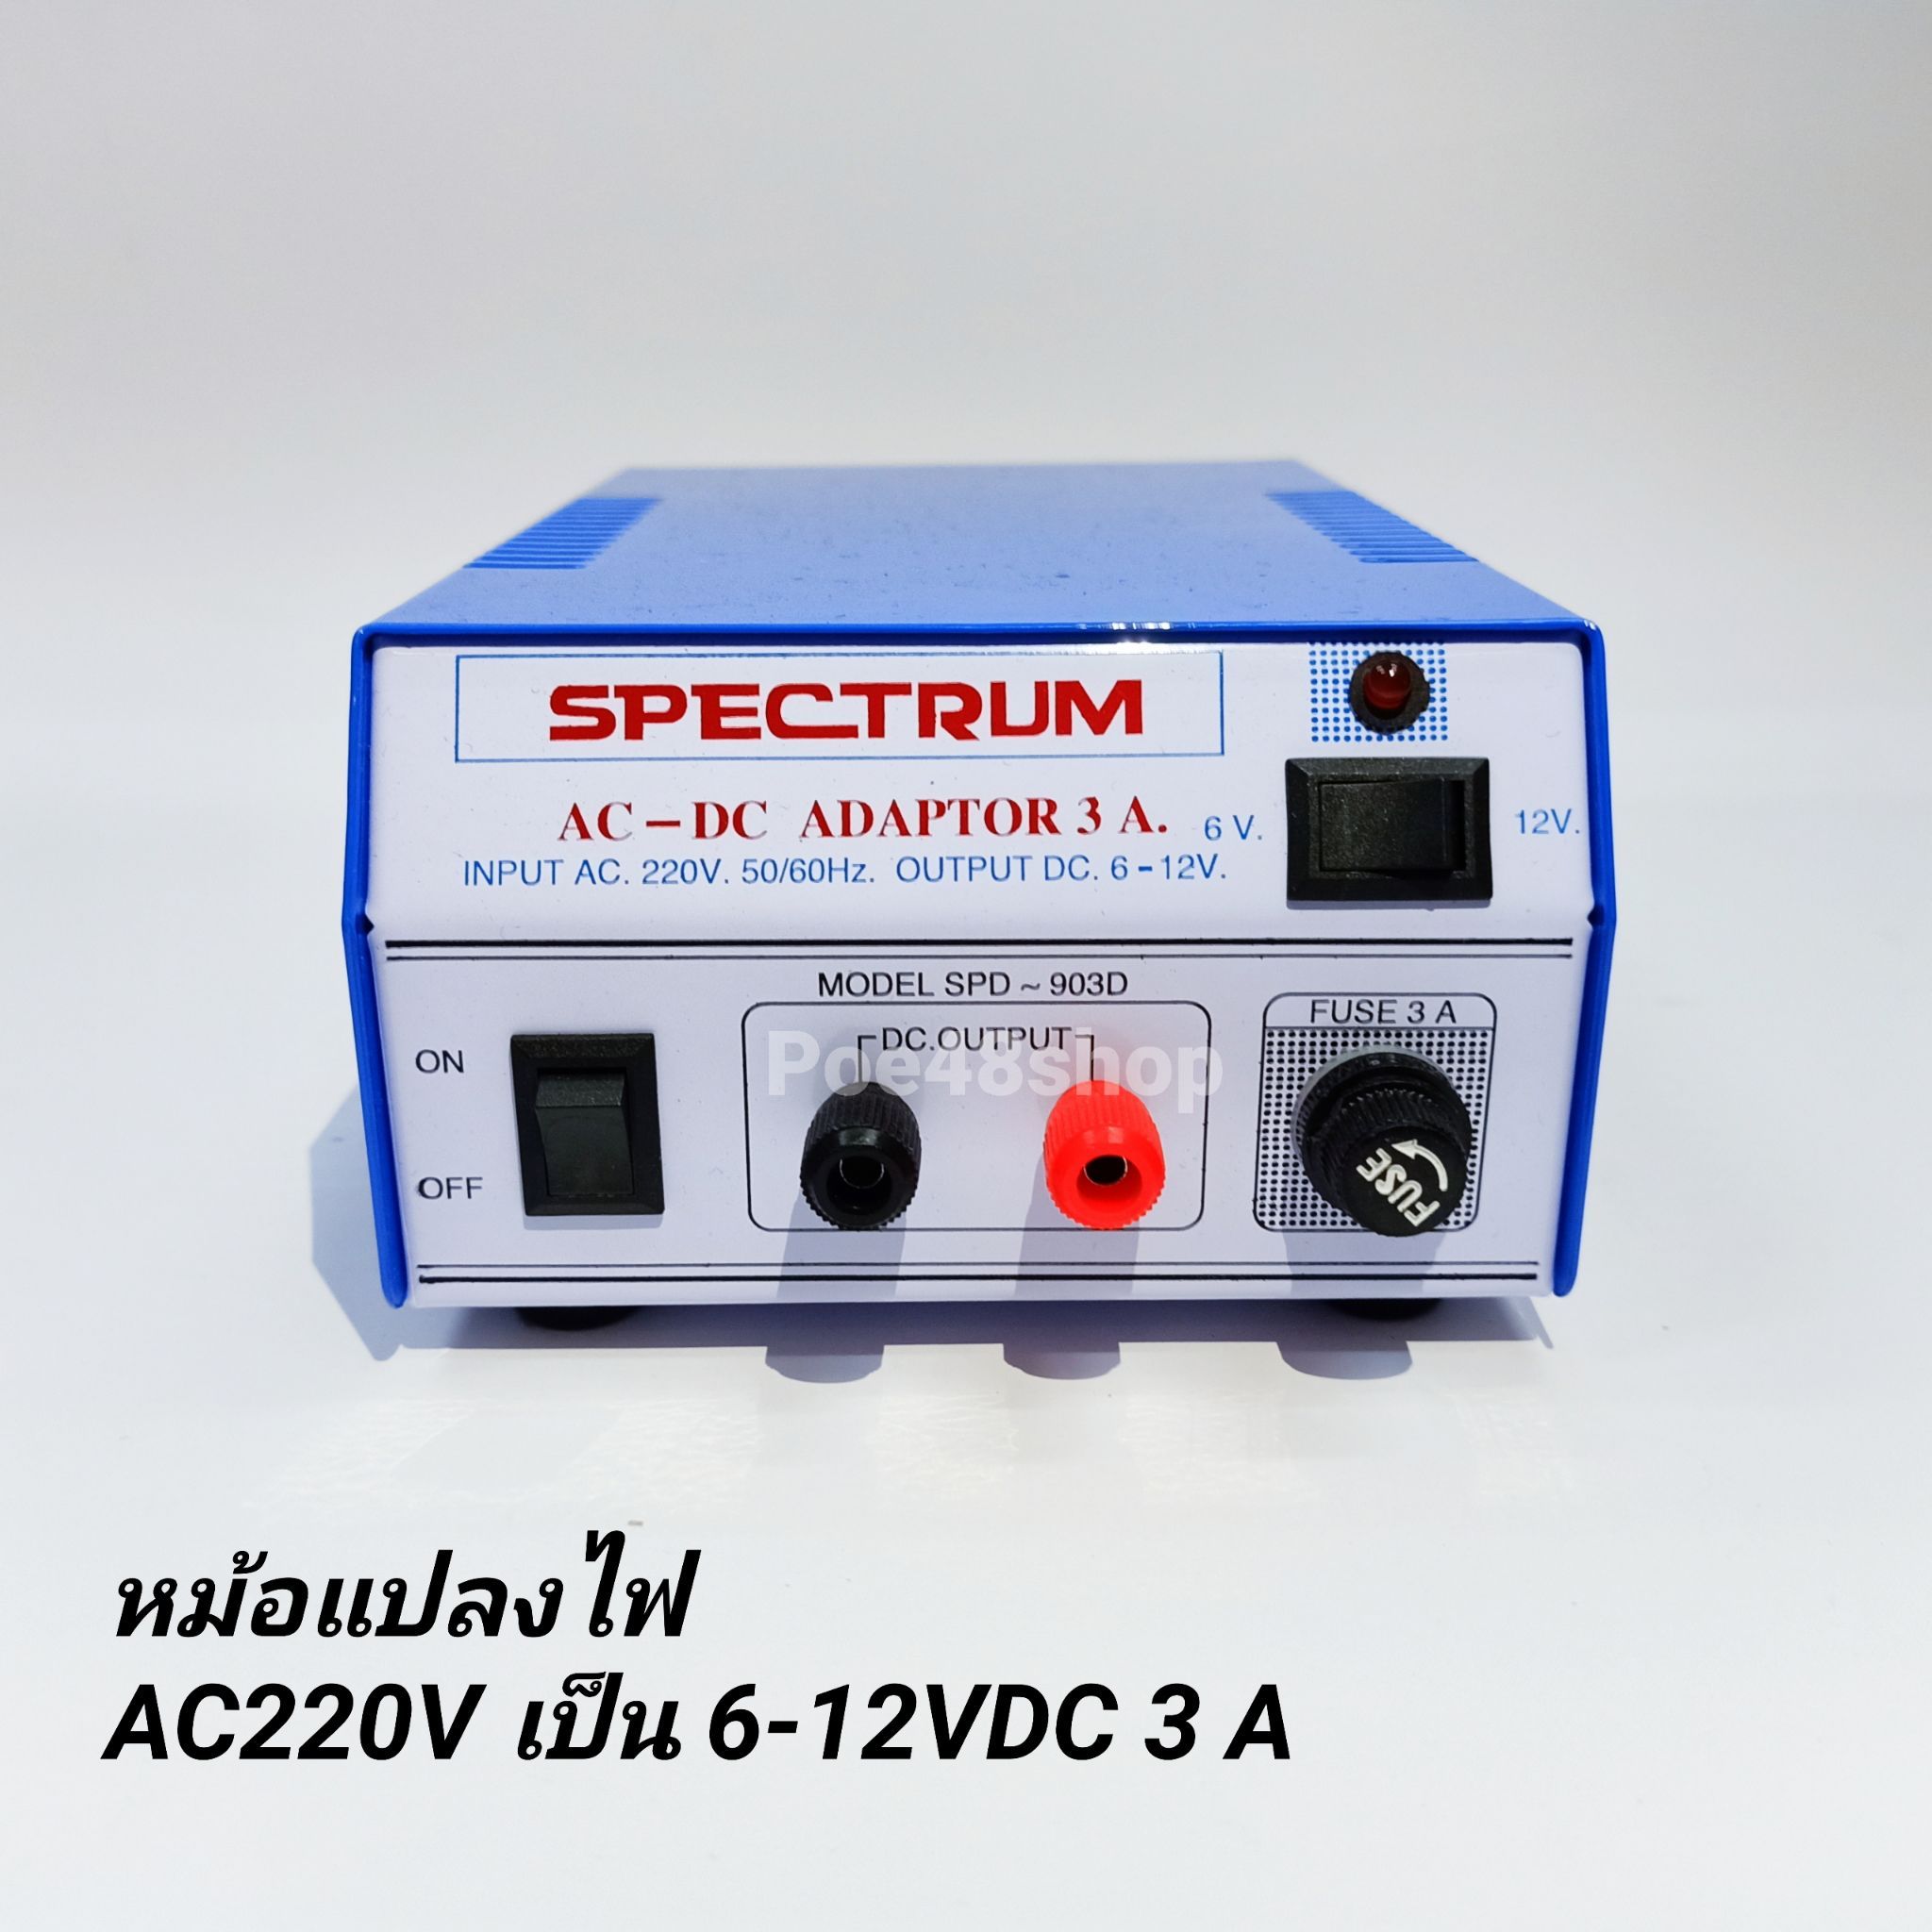 หม้อแปลงไฟจาก AC 220V เป็นไฟ DC 6V -12V 3 แอมป์ Adaptor 3A Model. SPD-903D SPECTRUM